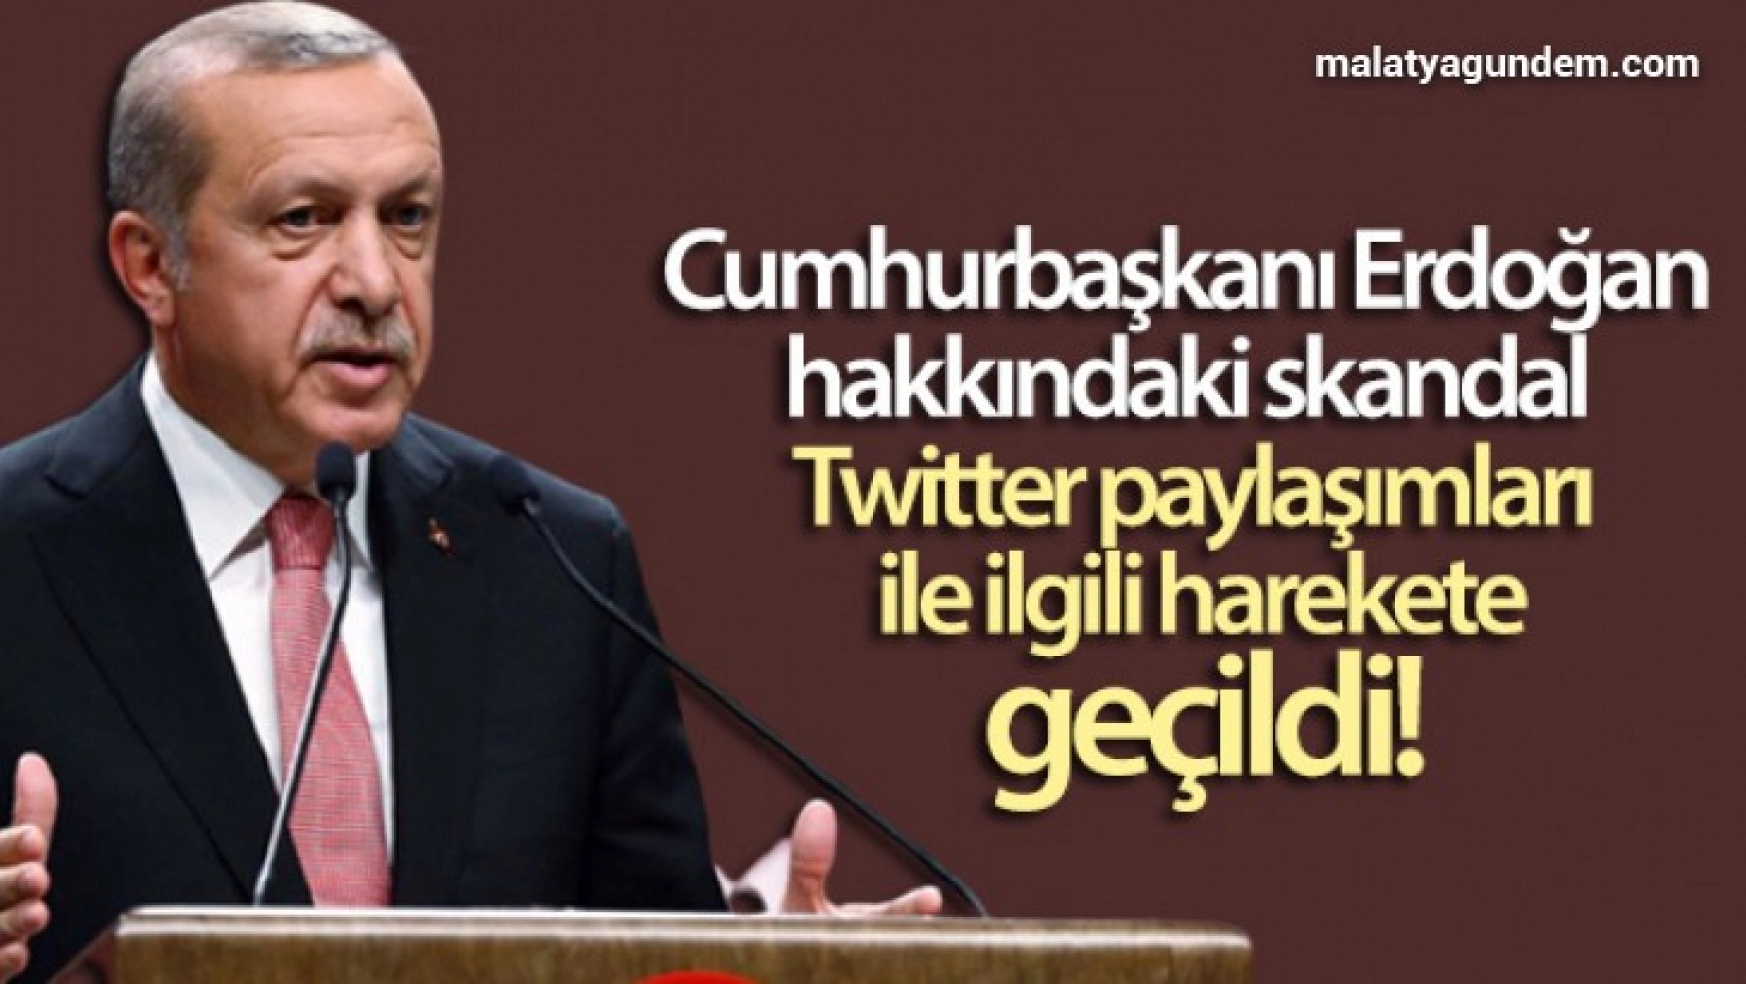 Cumhurbaşkanı Erdoğan hakkındaki skandal Twitter paylaşımları ile ilgili harekete geçildi